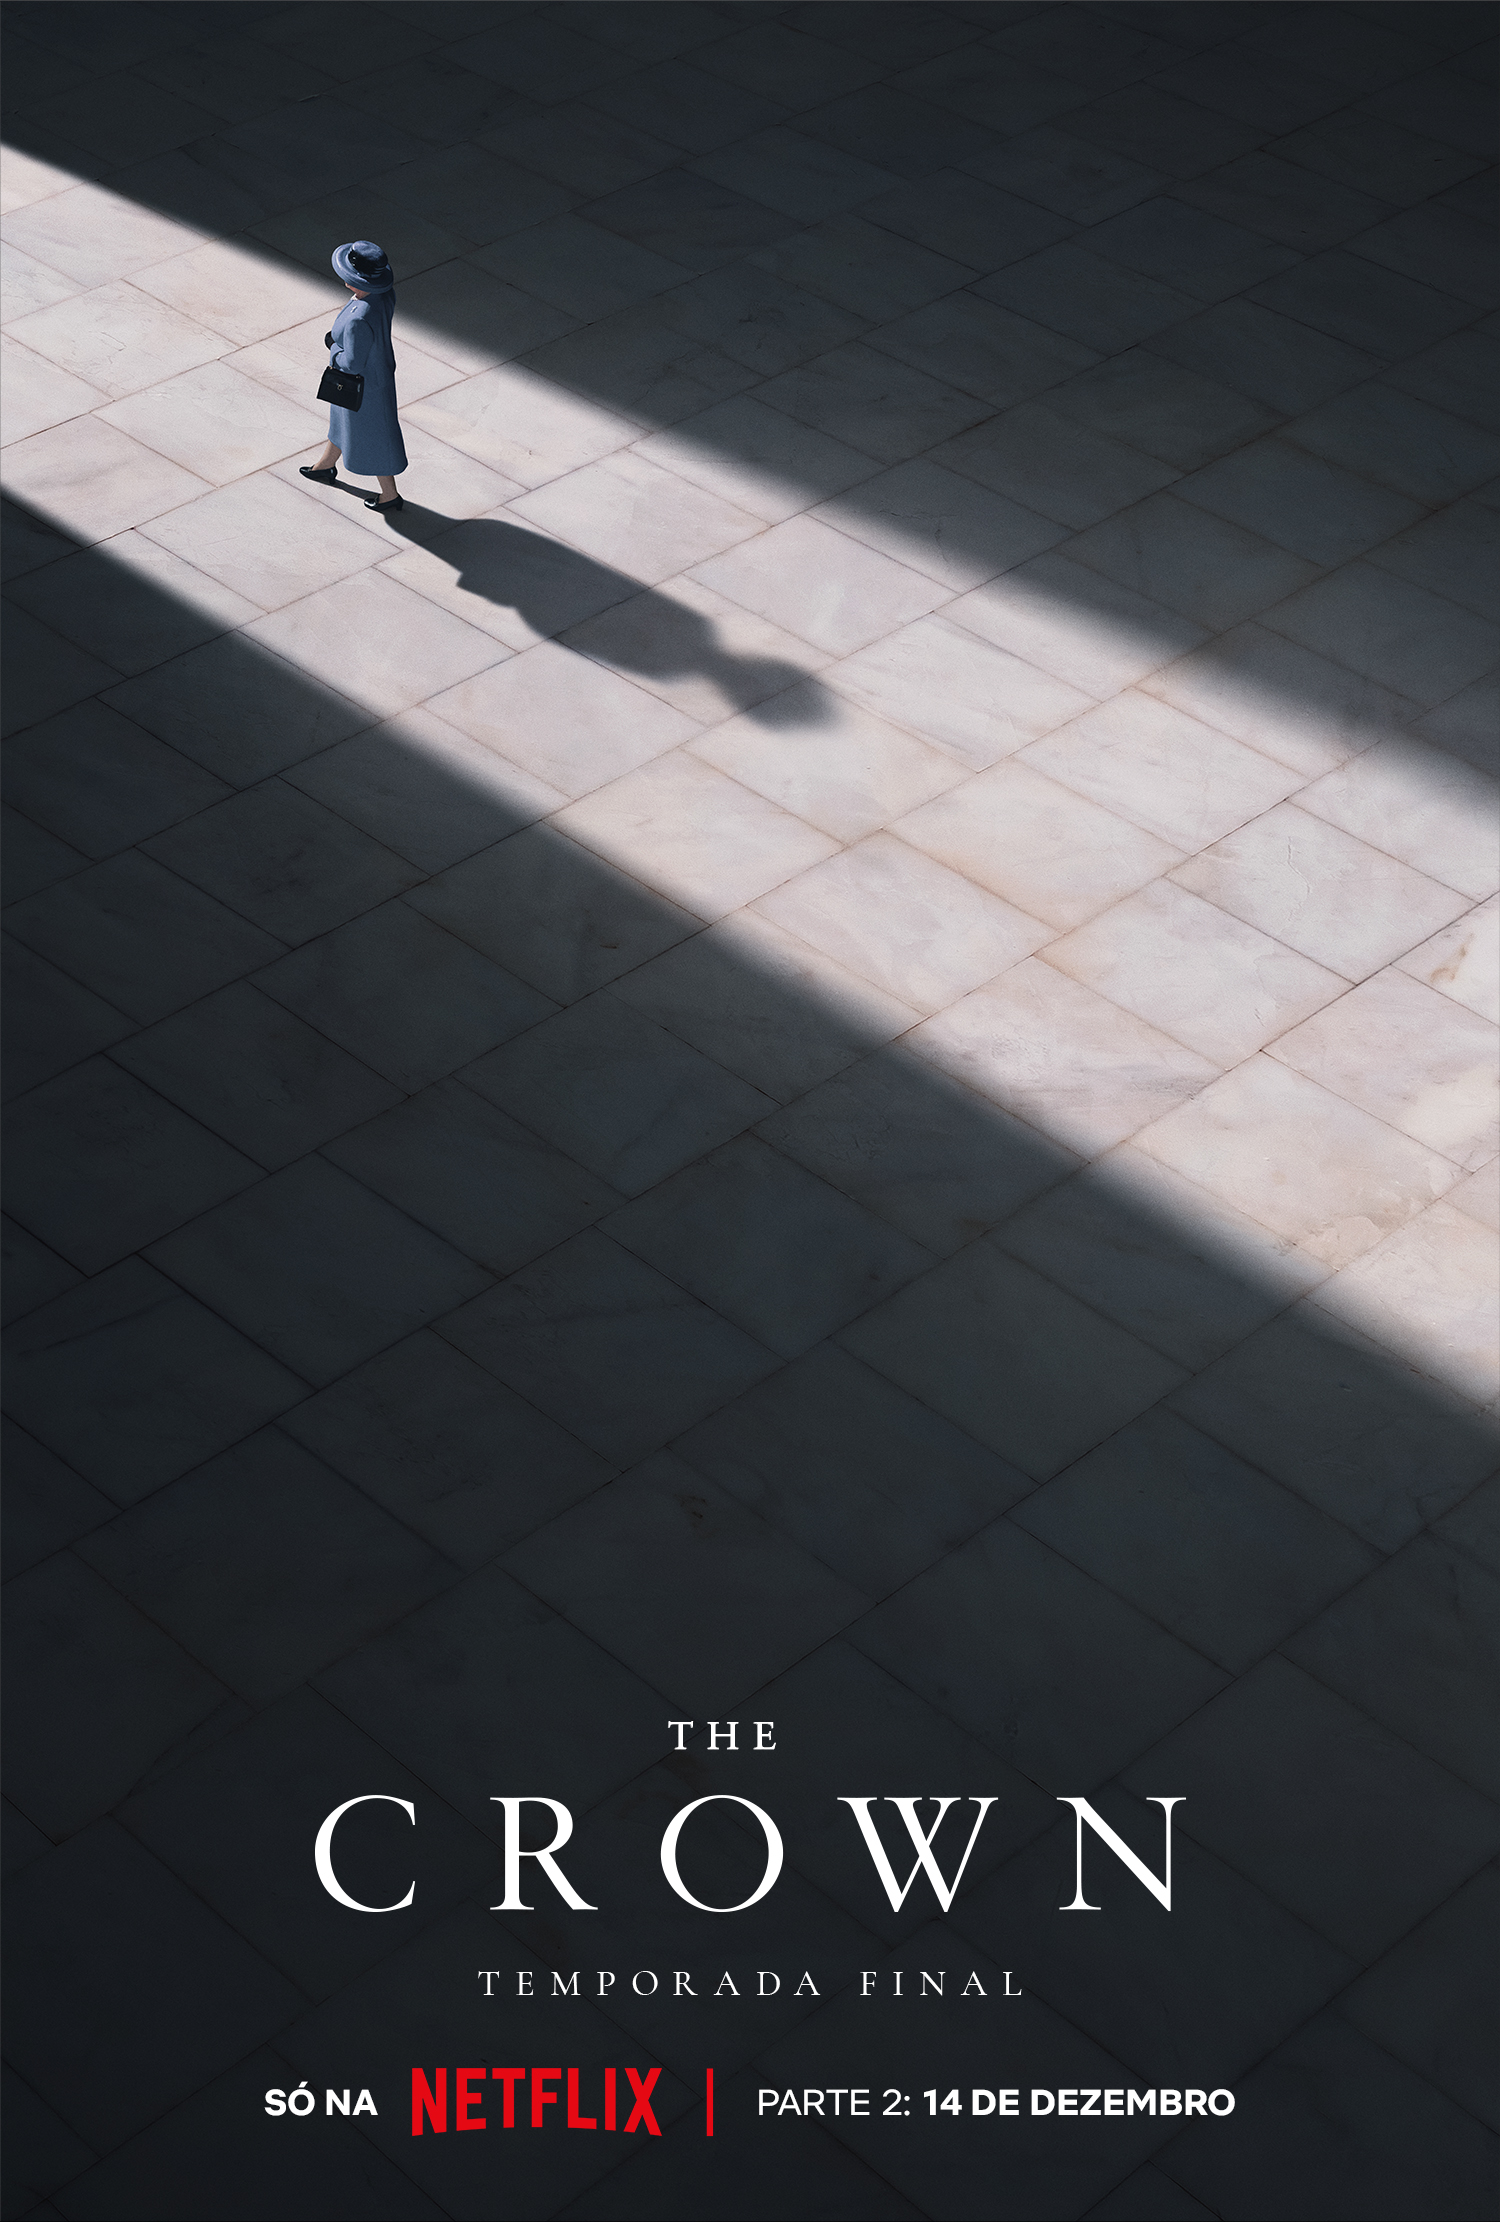 Netflix divulga pôster da segunda parte da última temporada de "The Crown" (Foto: Divulgação/Netflix)